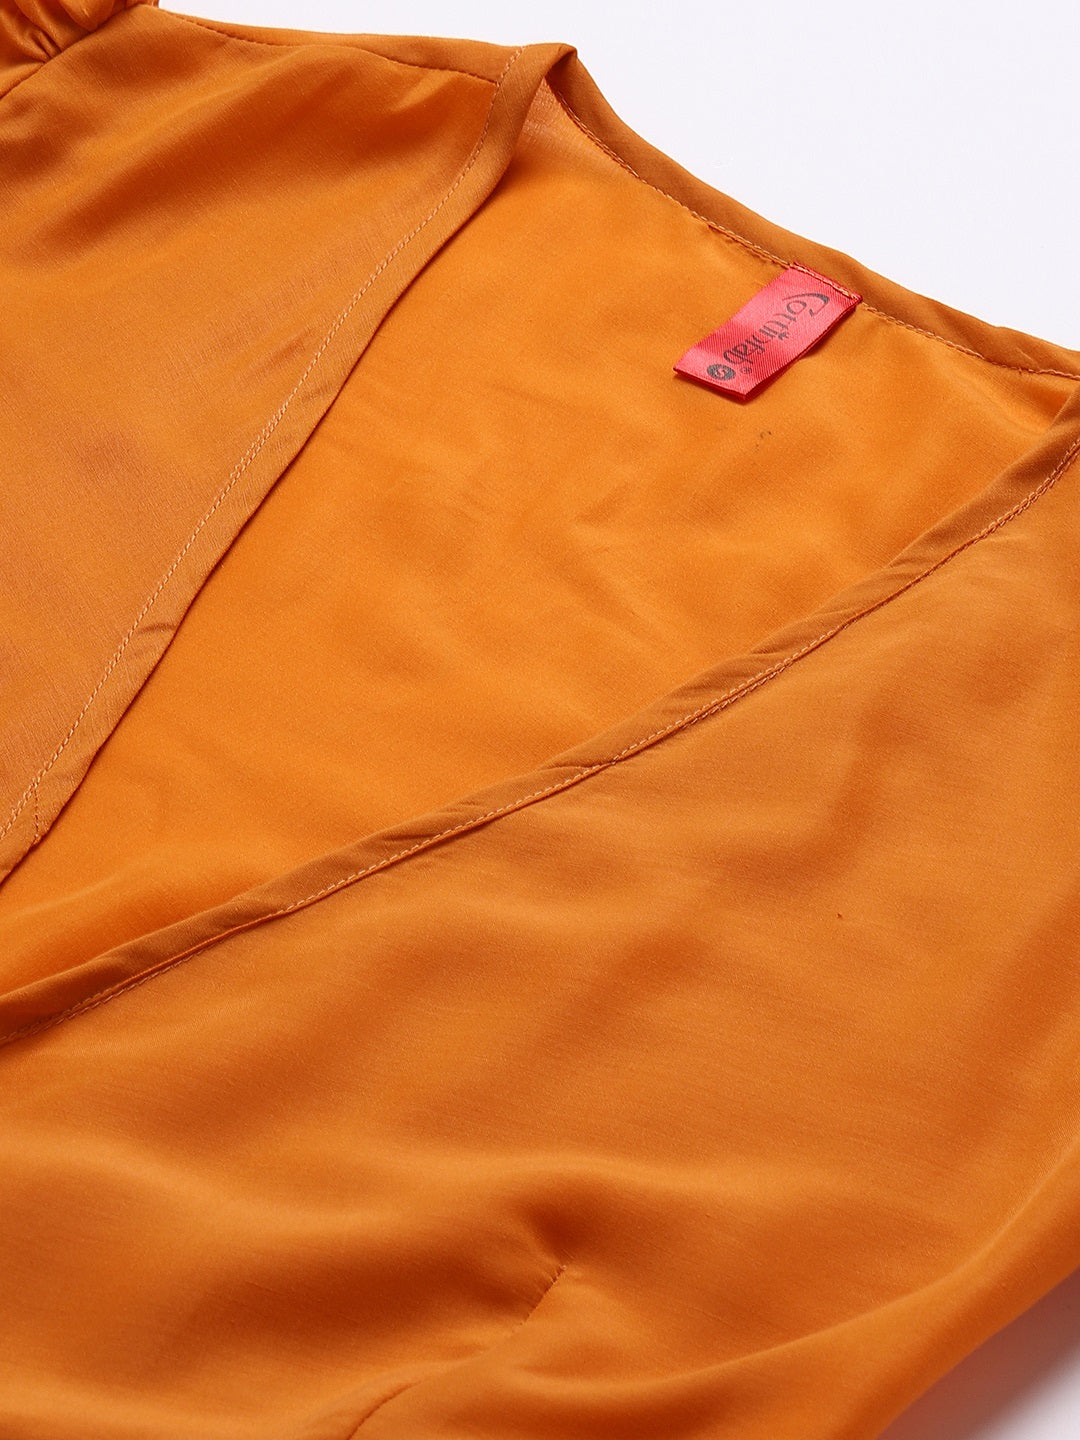 Cottinfab Orange V Neck Maxi Wrap Dress